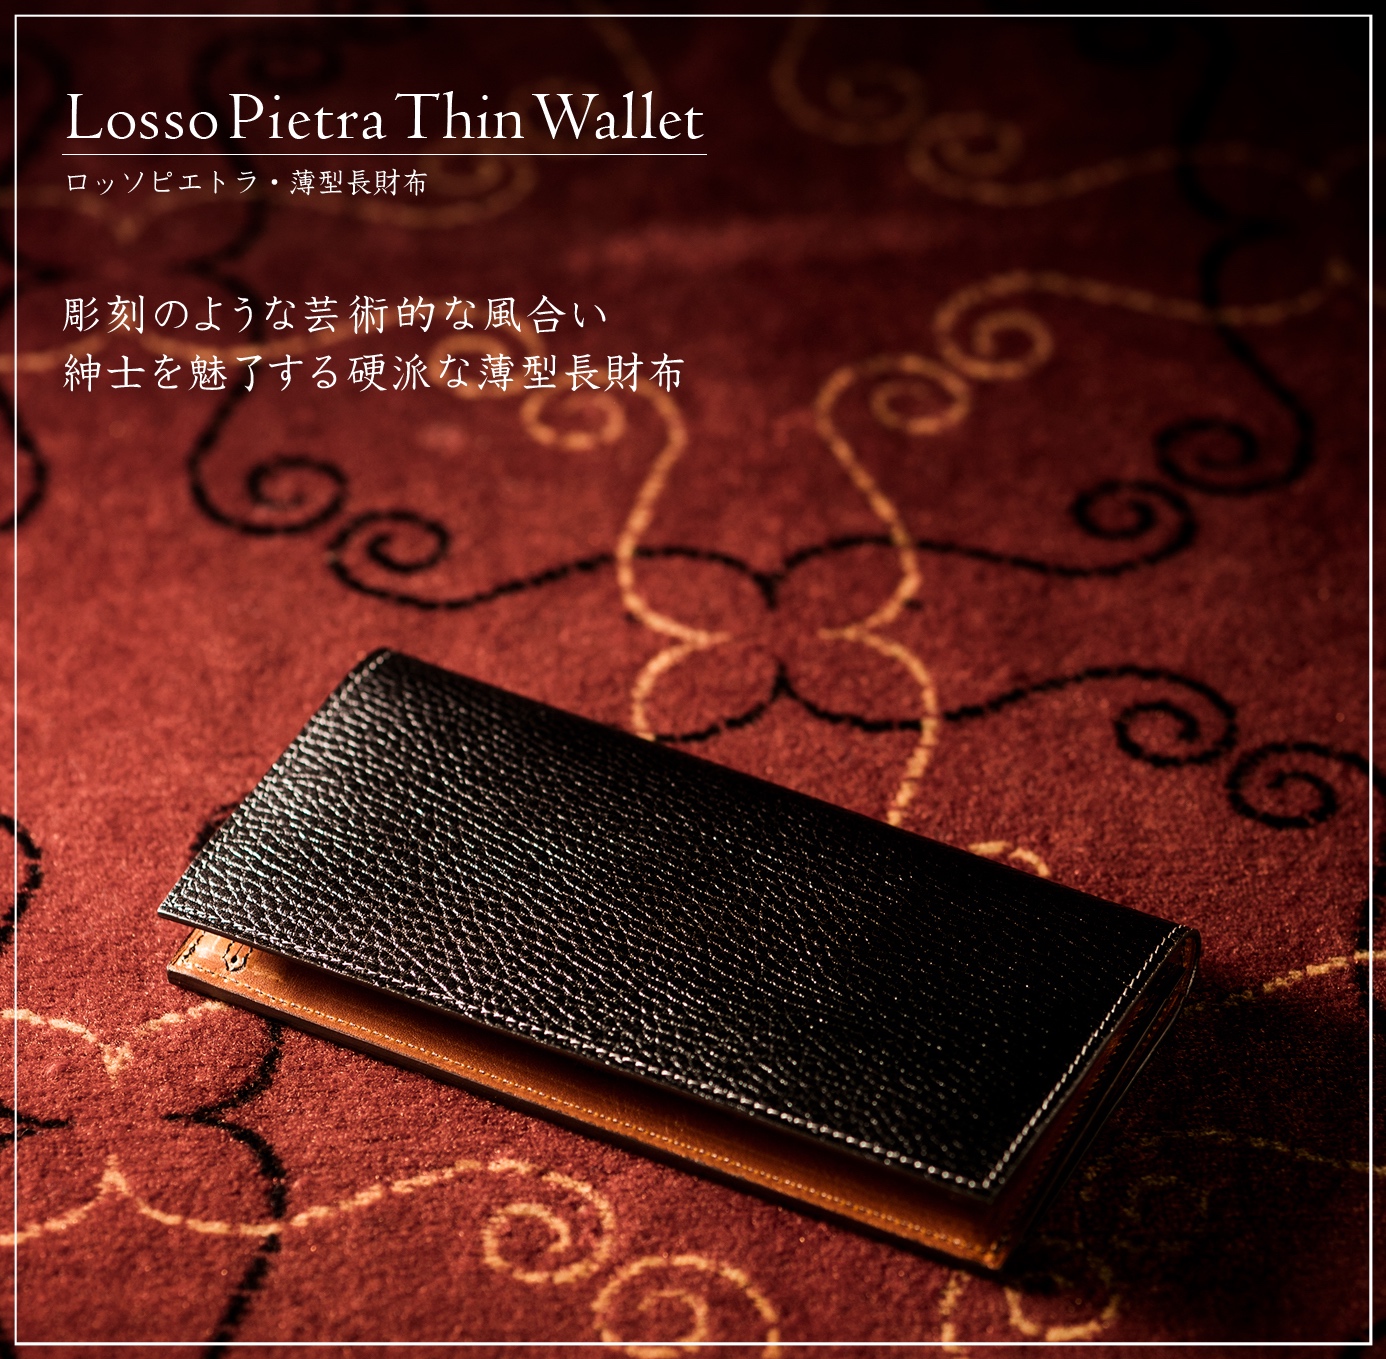 ココマイスターのロッソピエトラの薄型長財布は硬派で男らしい！